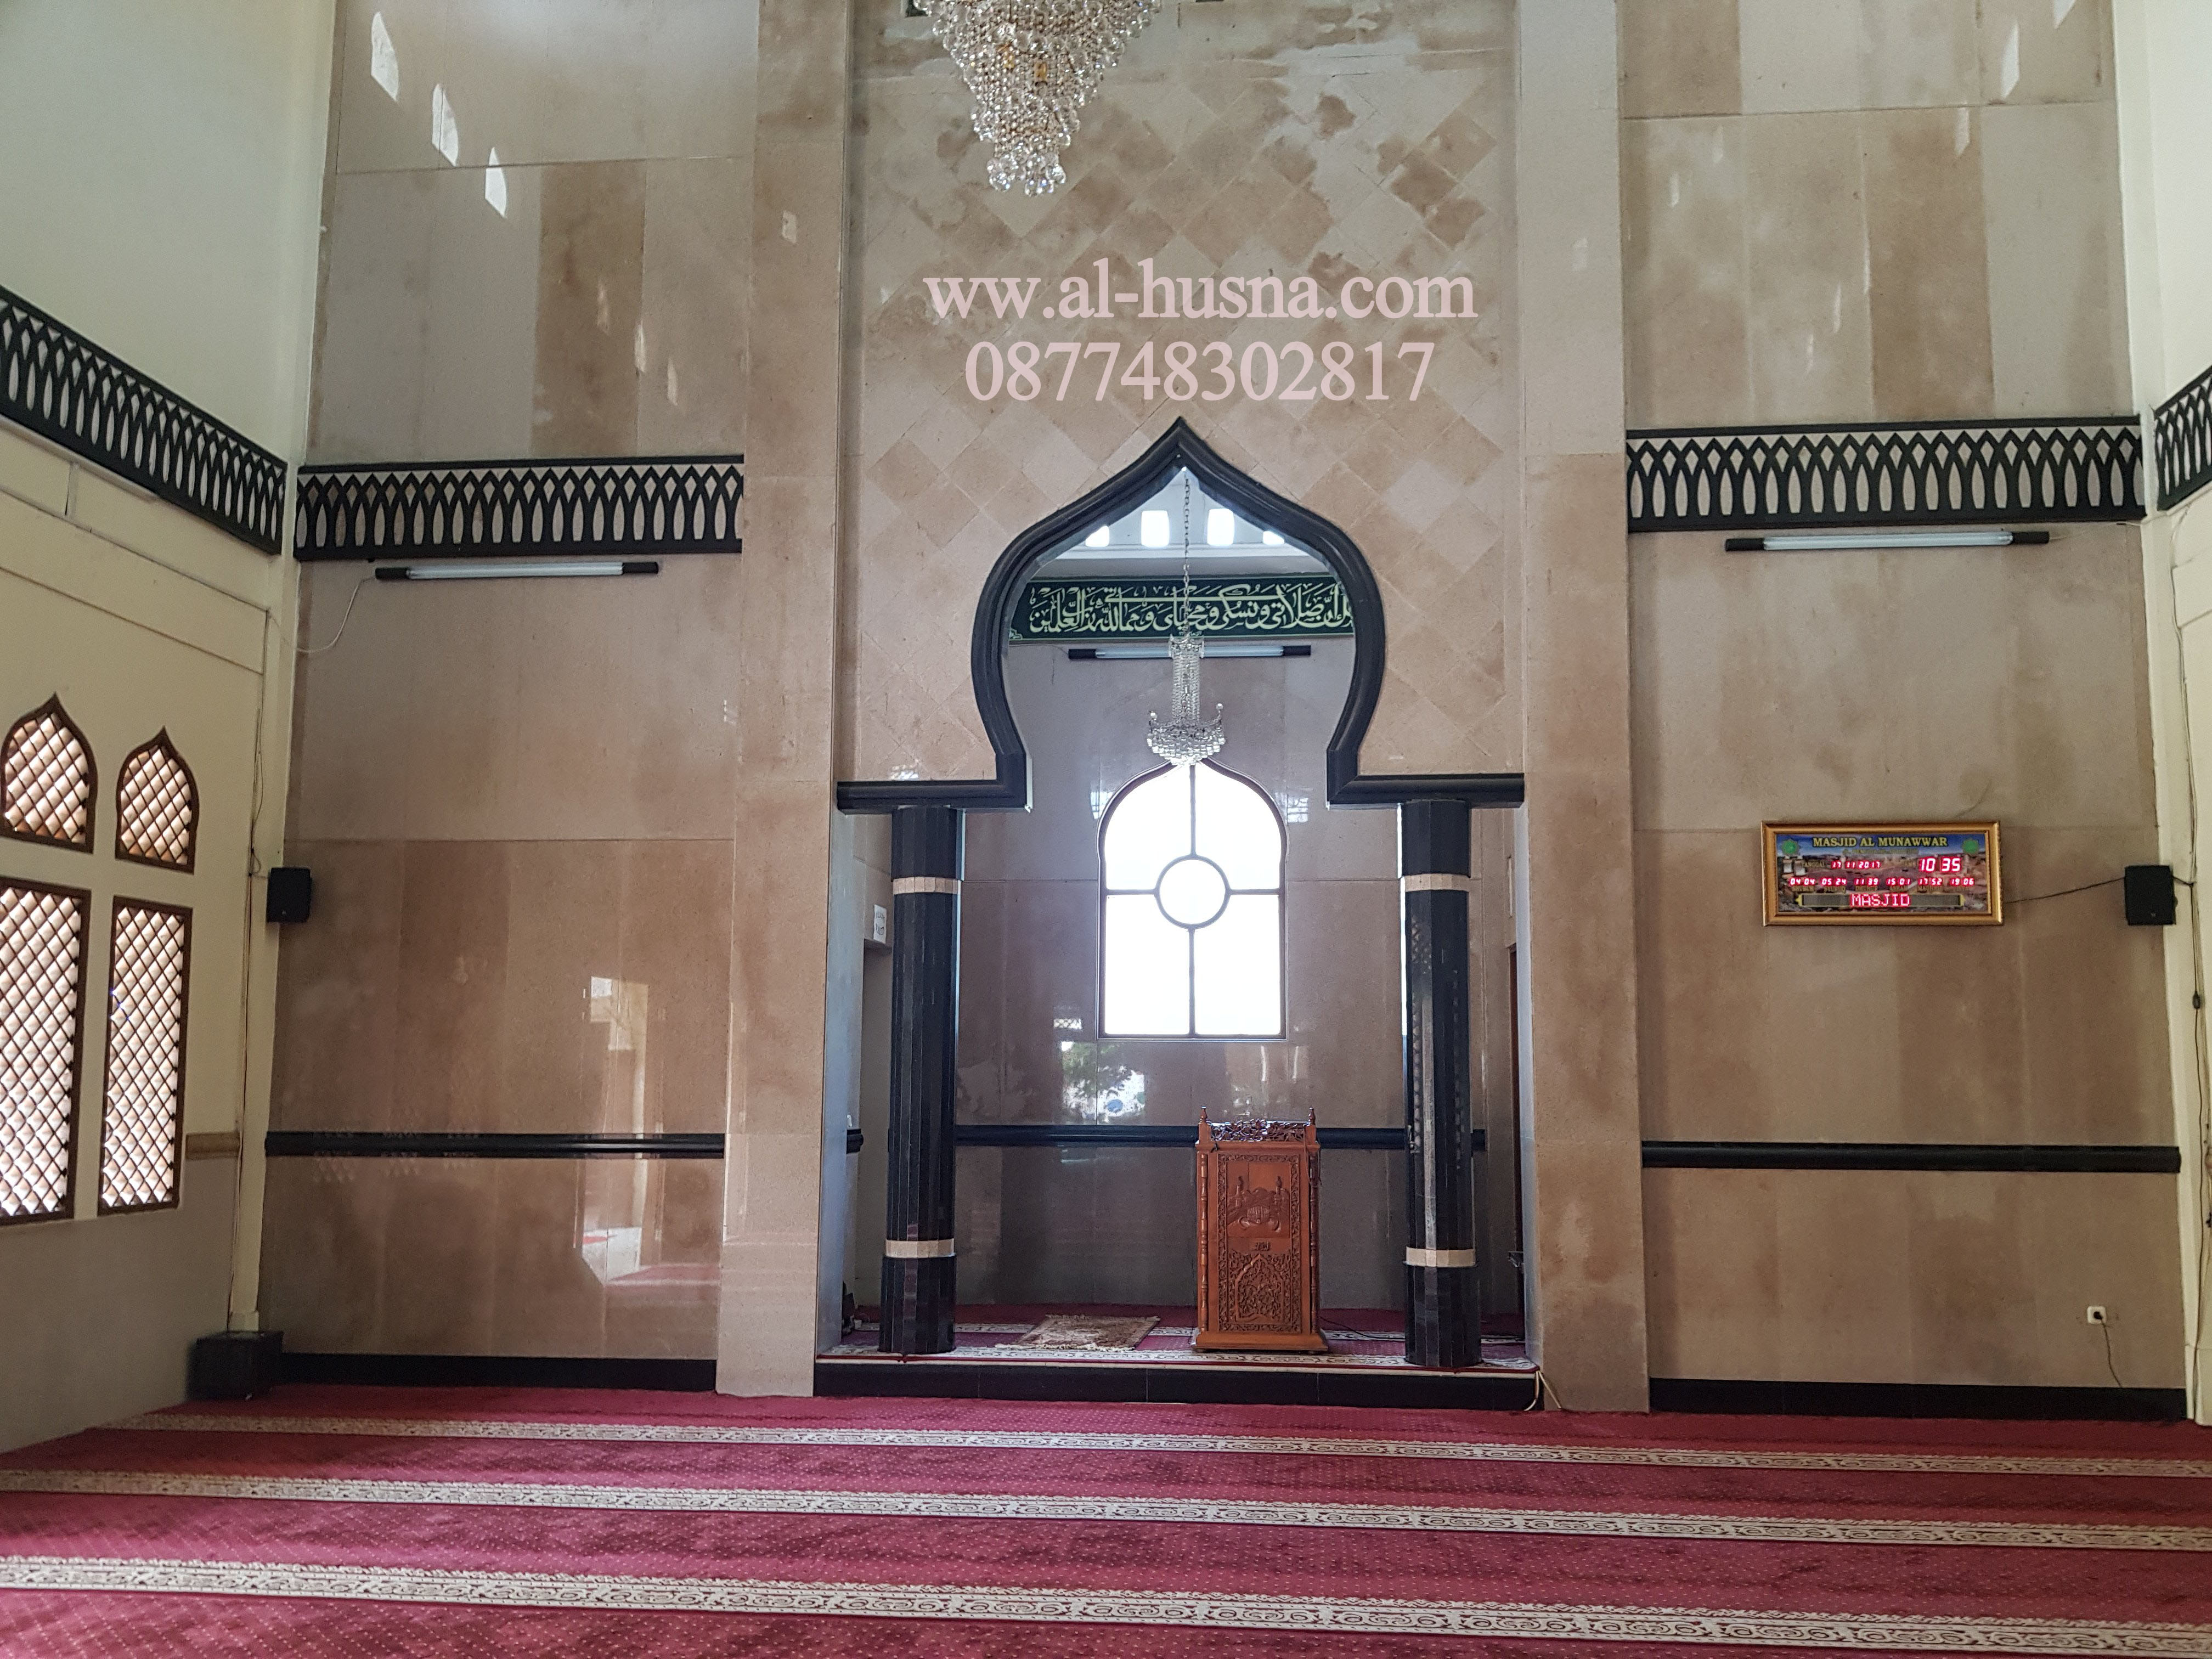 Daftar Harga Karpet Masjid Di Karanghaur Bekasi